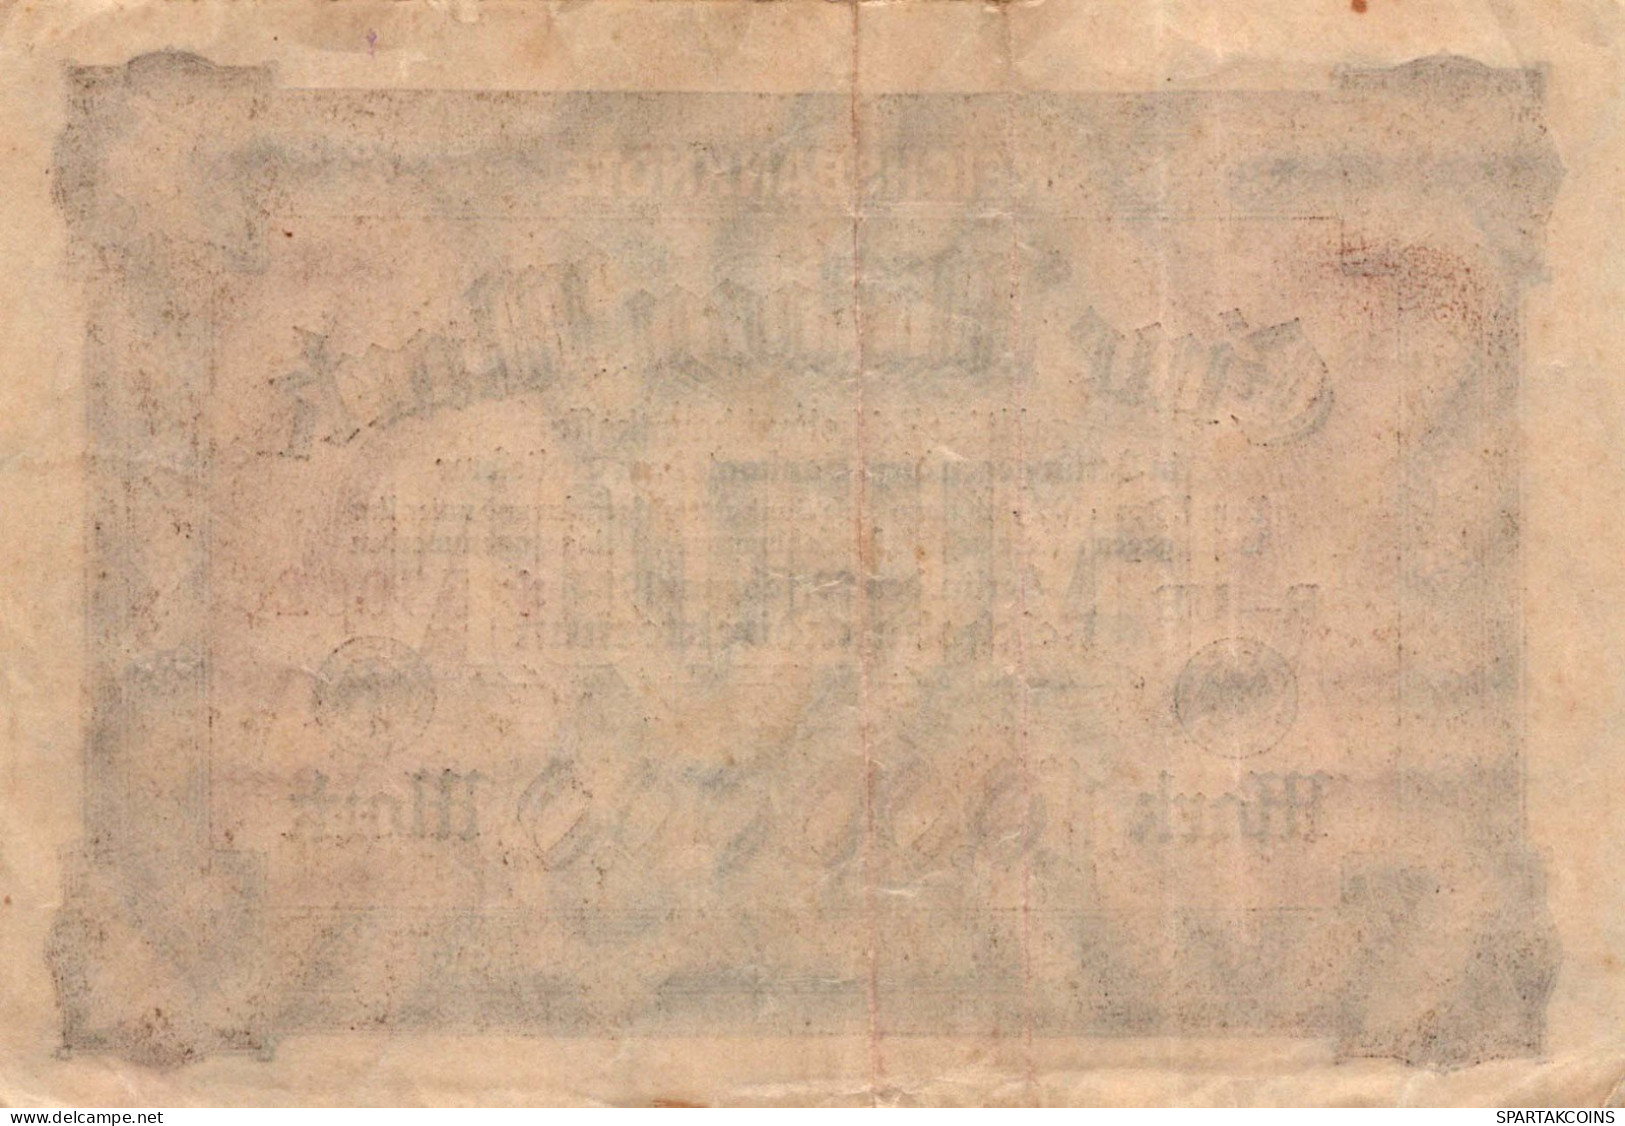 1 MILLION MARK 1923 Stadt BERLIN DEUTSCHLAND Papiergeld Banknote #PK959 - [11] Local Banknote Issues